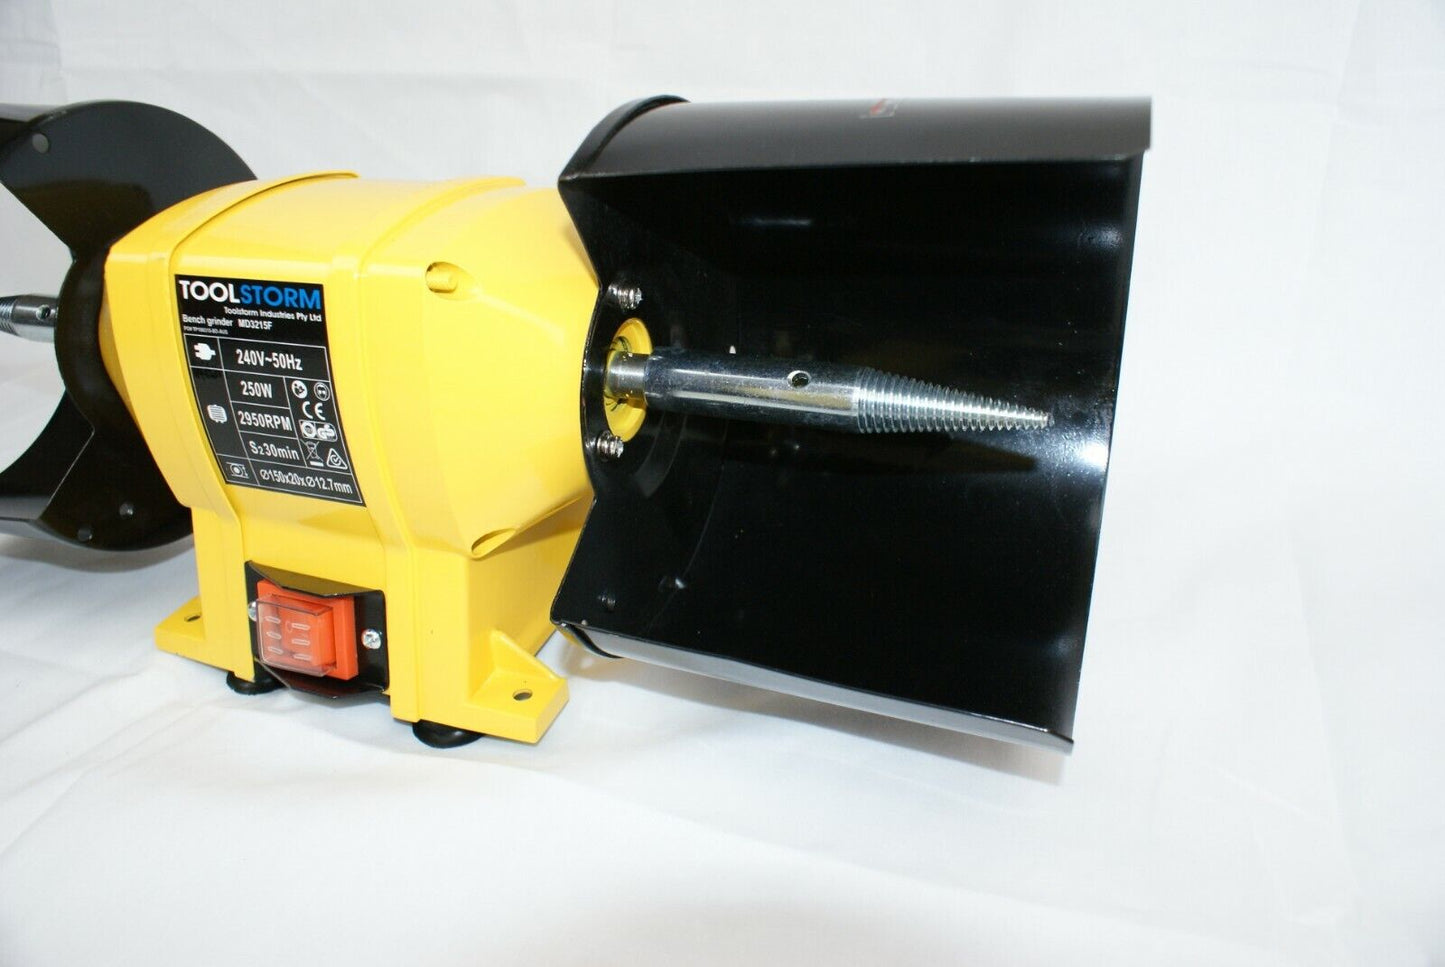 150mm Induction Bench Grinder & Metal Polishing Puffing Sander Kit & SafetyGuard